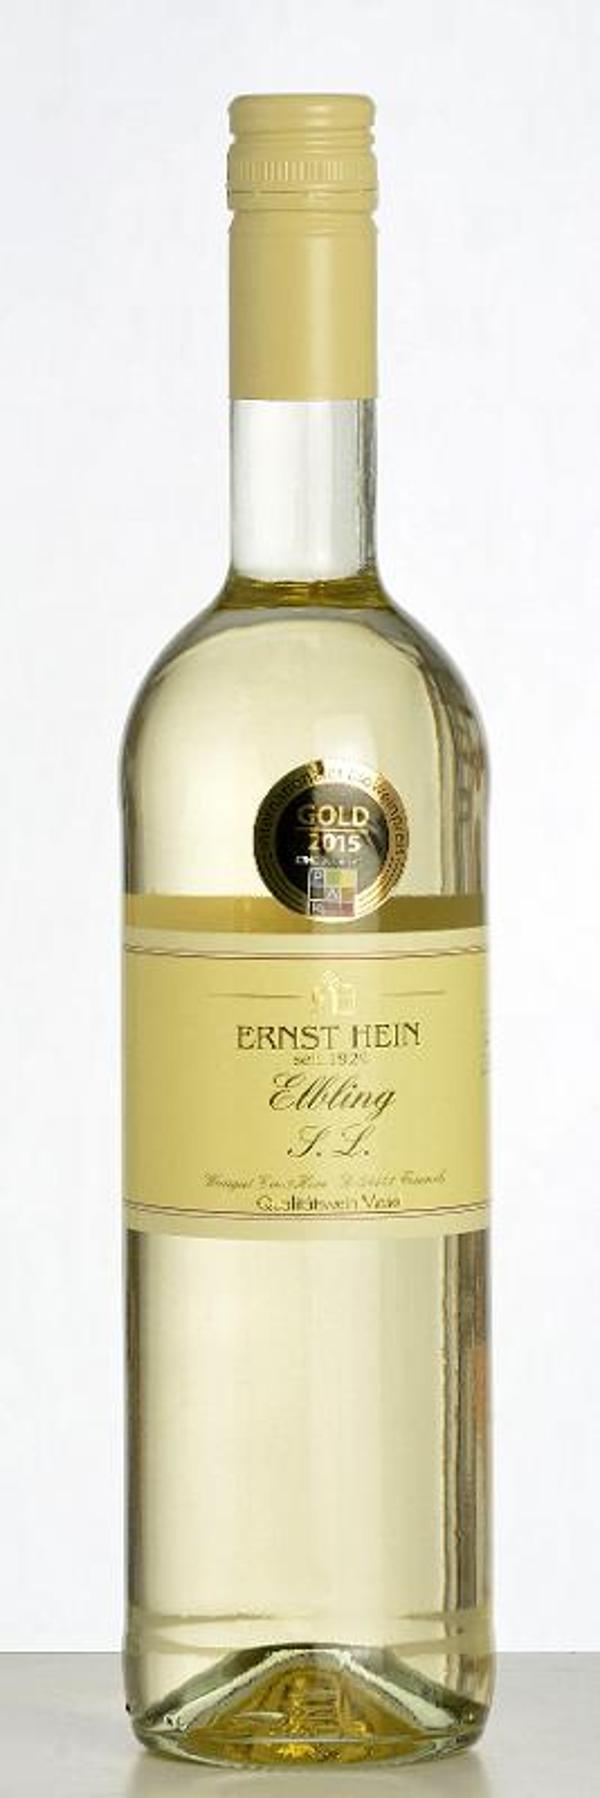 Produktfoto zu Elbling sur lie weiß, Weingut Hein, trocken, 0,75l